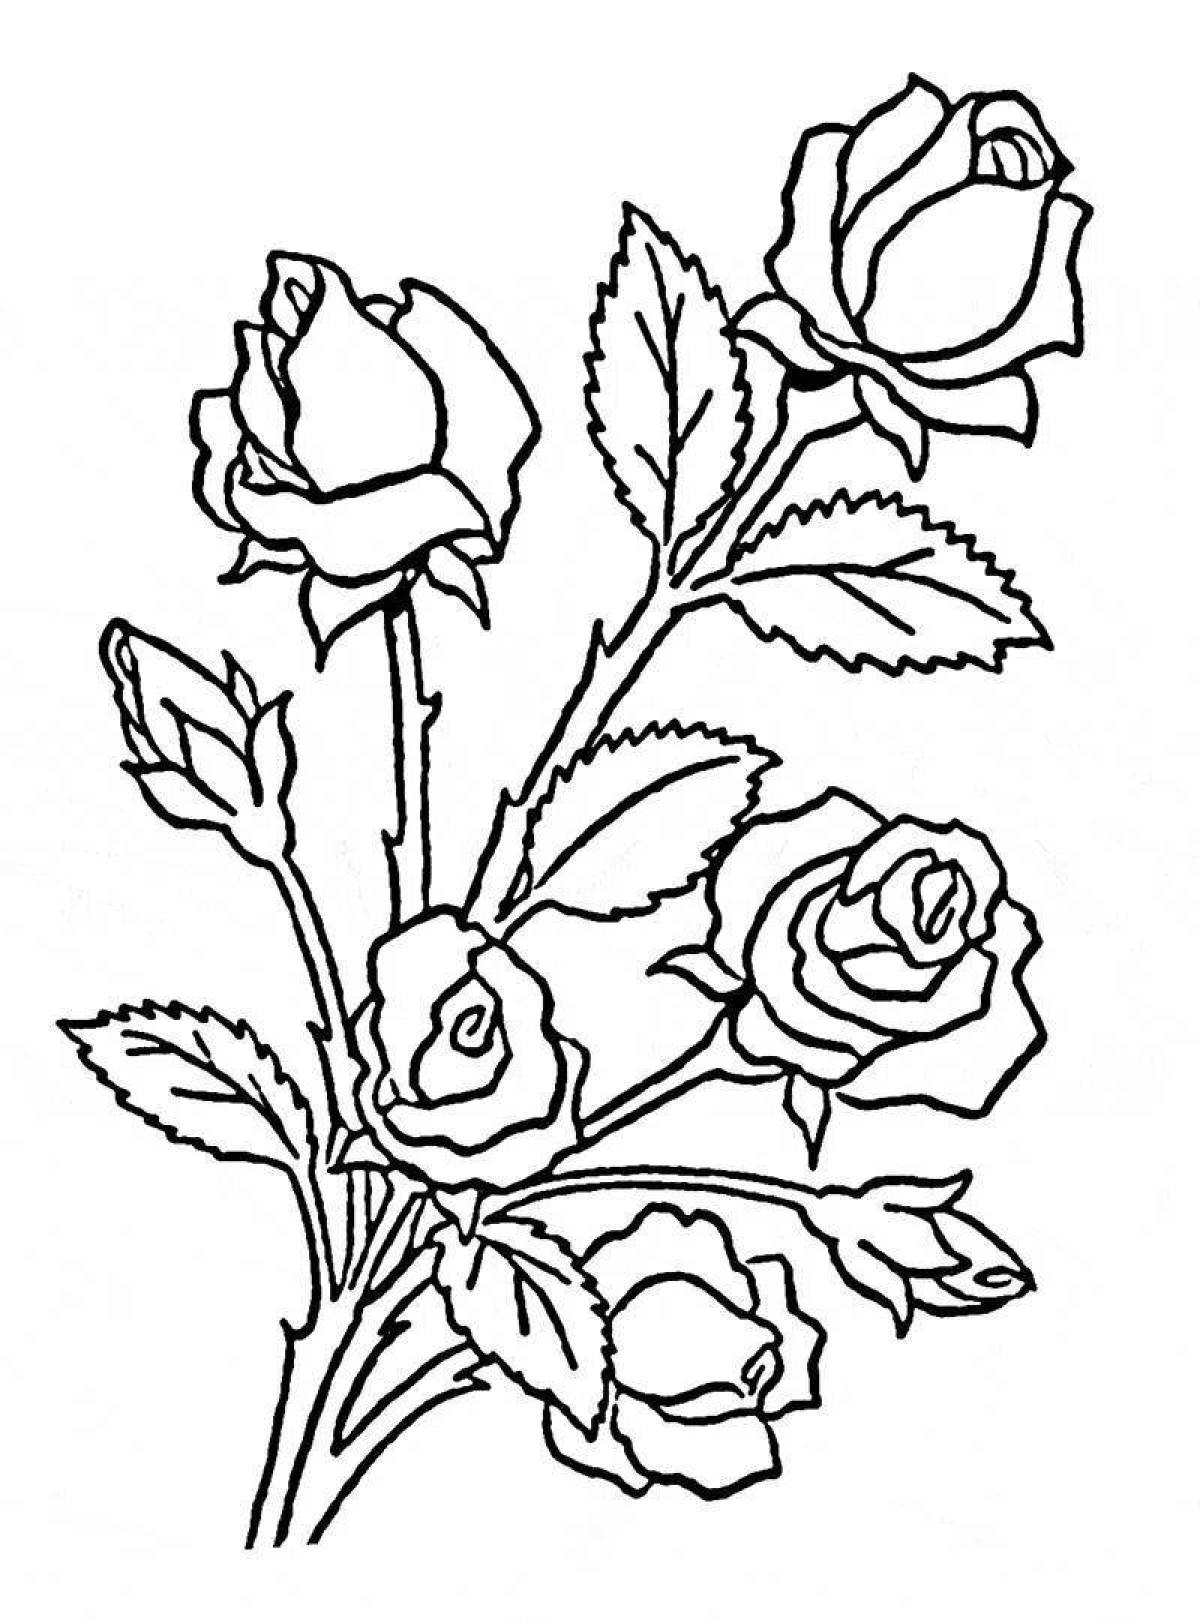 Великолепная раскраска розы для детей 5-6 лет